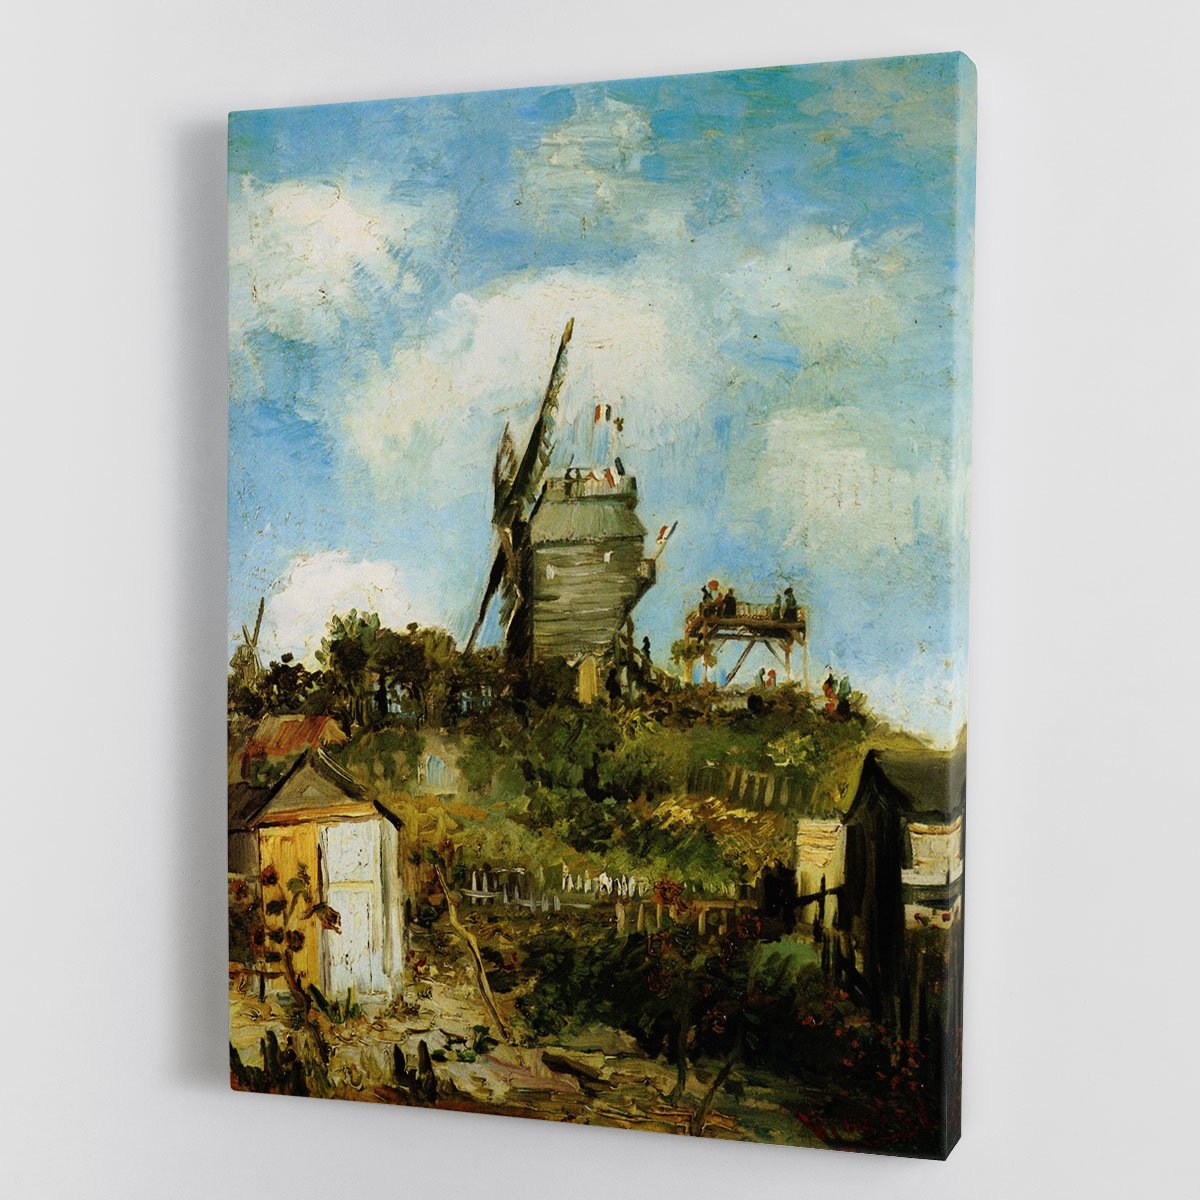 Le Moulin de la Galette by Van Gogh Canvas Print or Poster